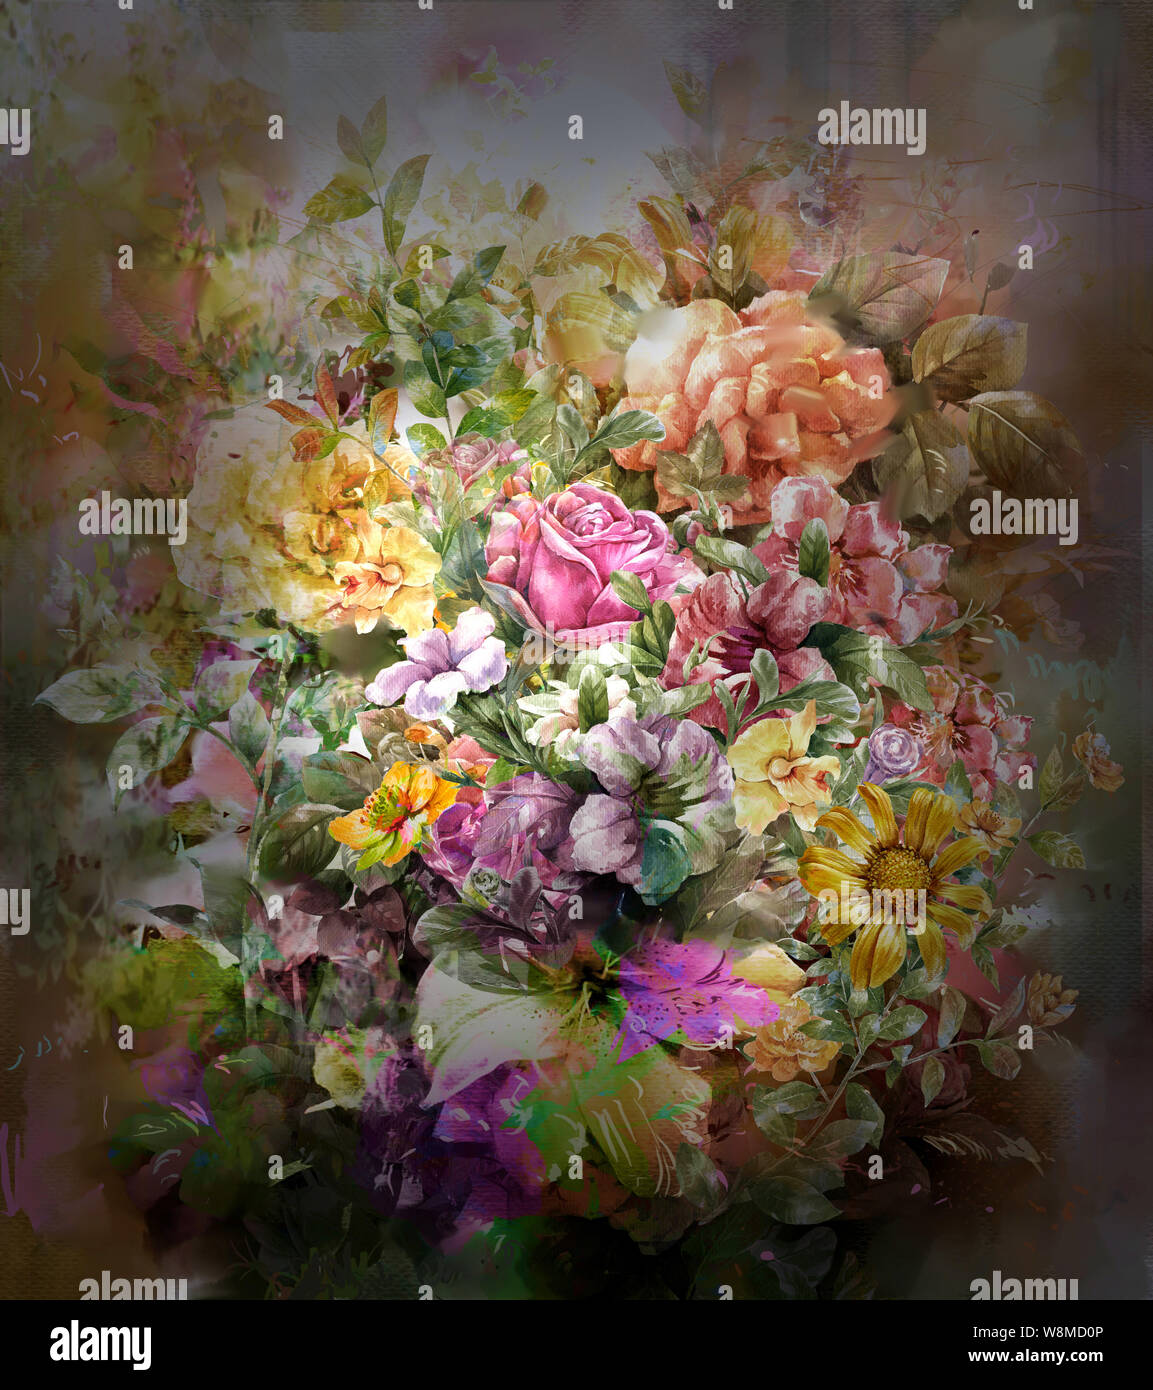 Abstract fiori colorati dipinti ad acquerello. Molla di fiori multicolori Foto Stock